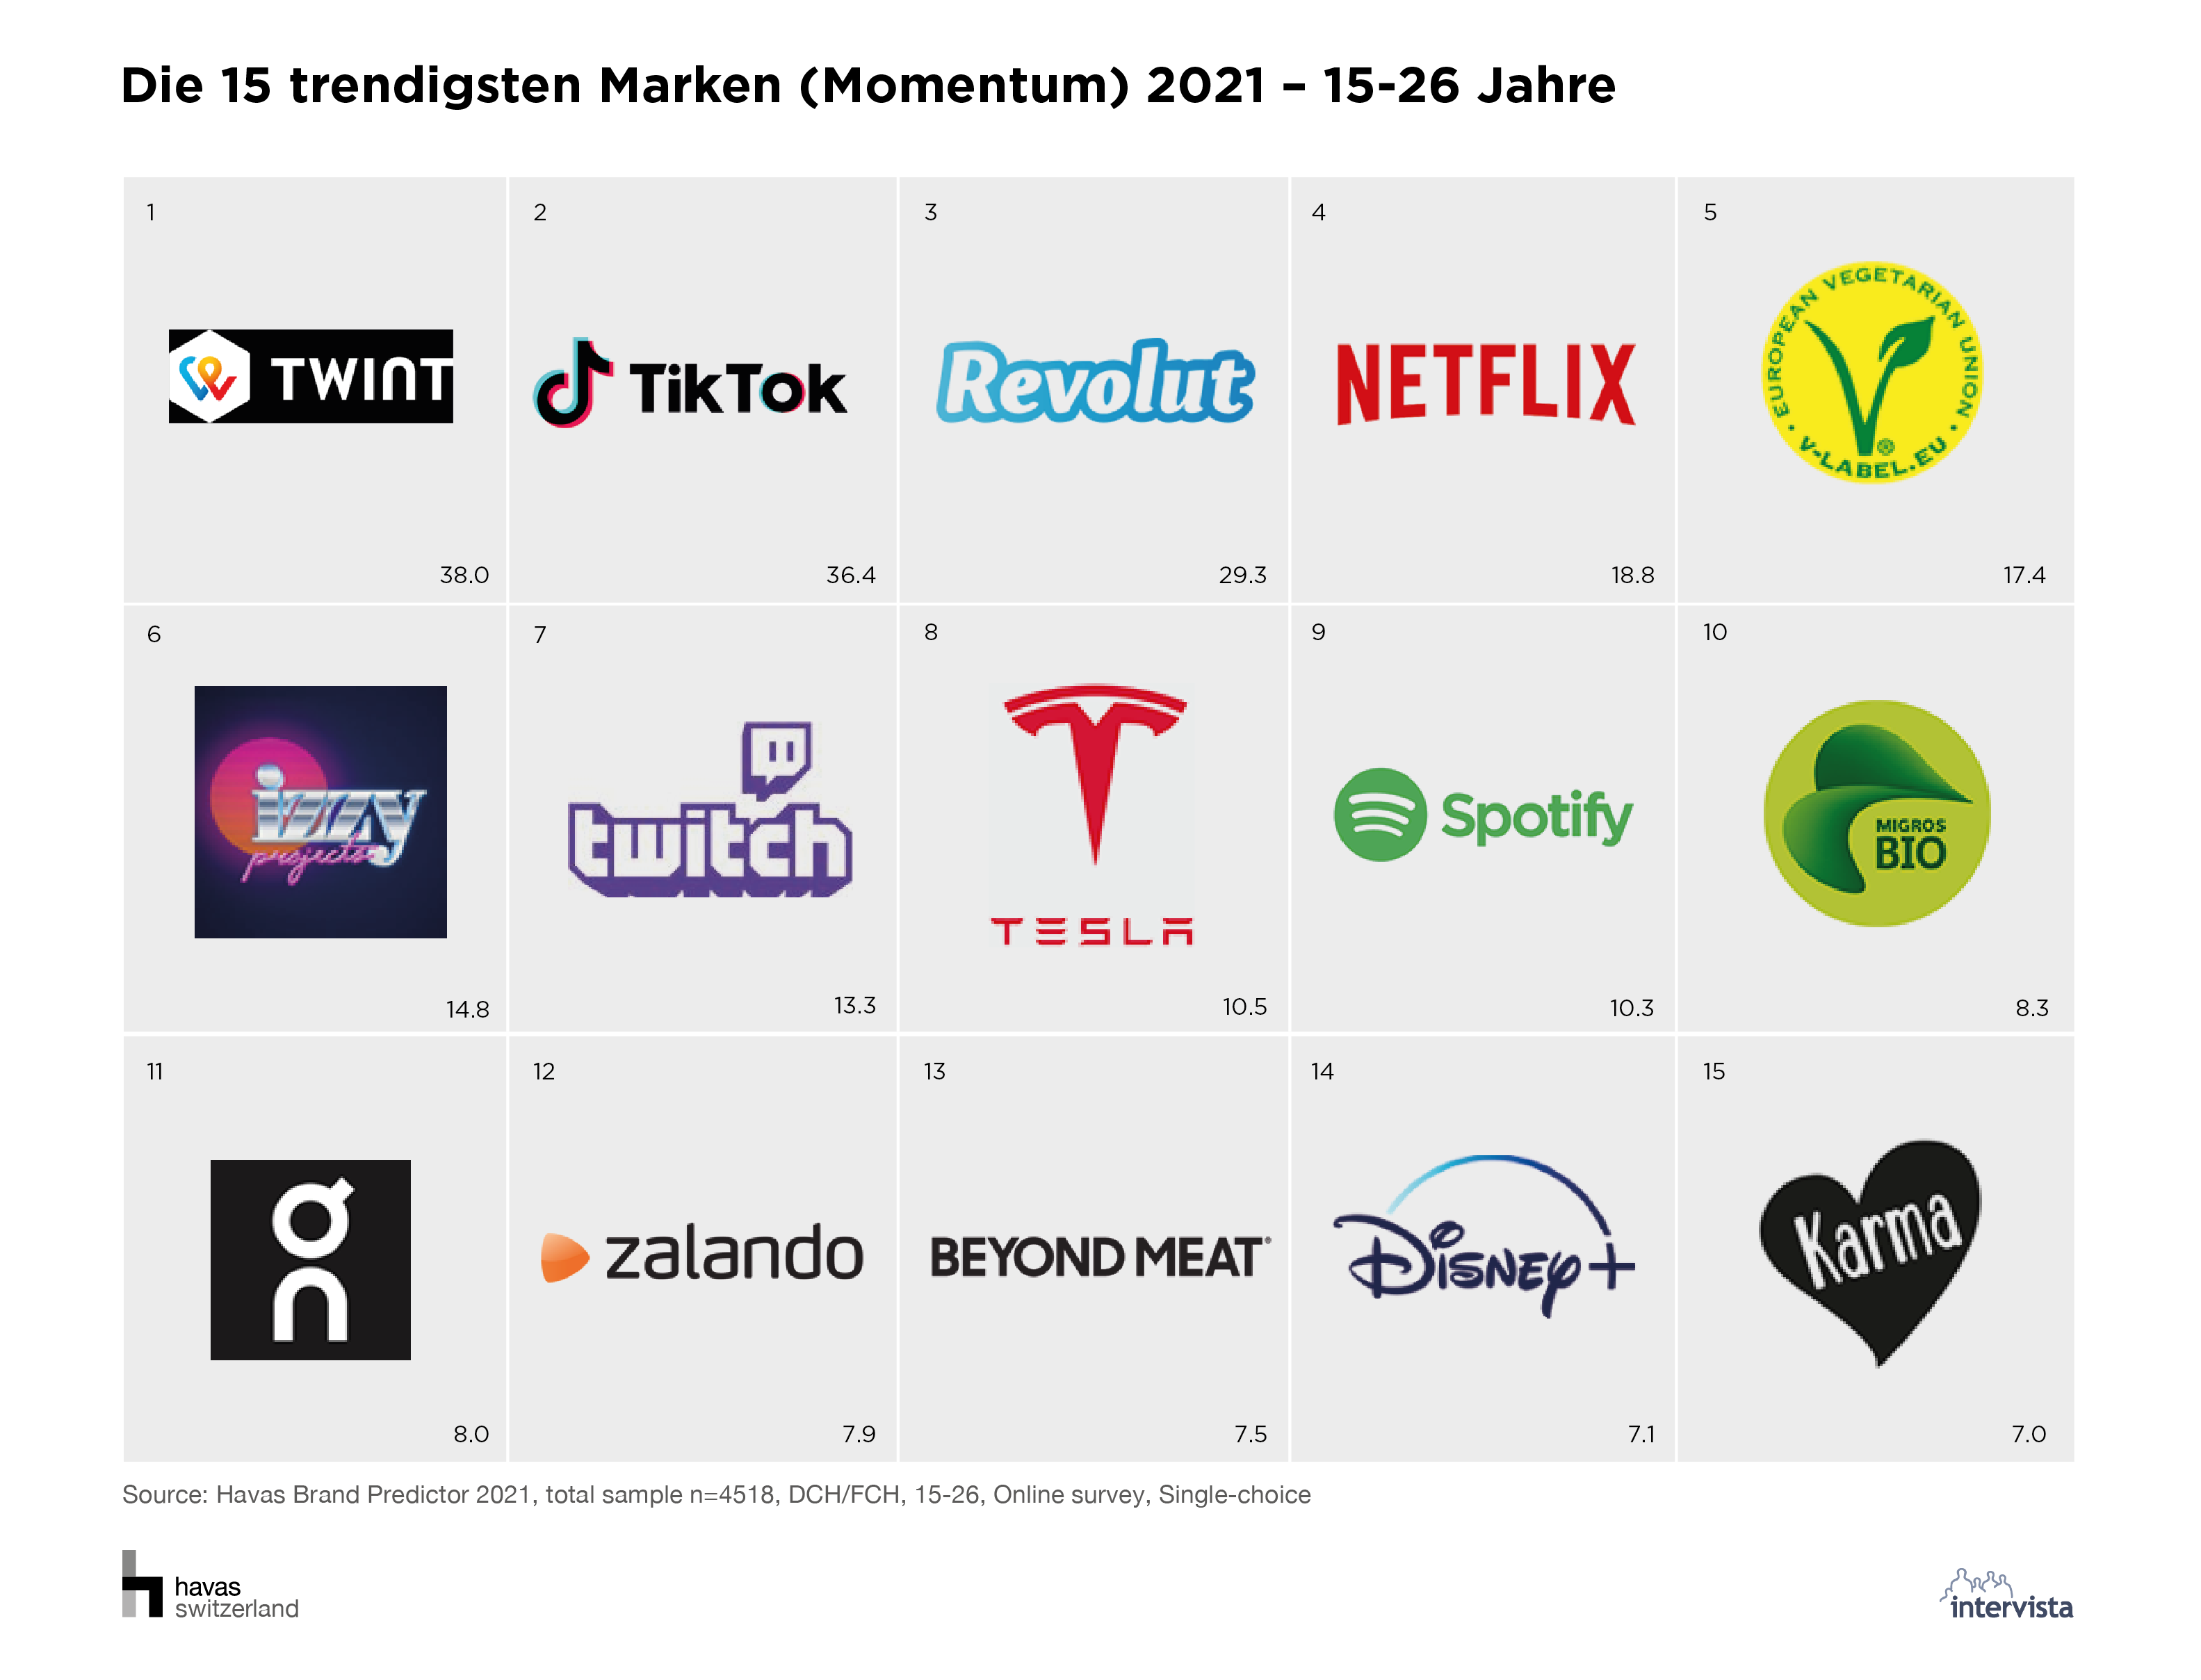 05_Die 15 trendigsten Marken (Momentum) 2021_15-26 Jahre.png